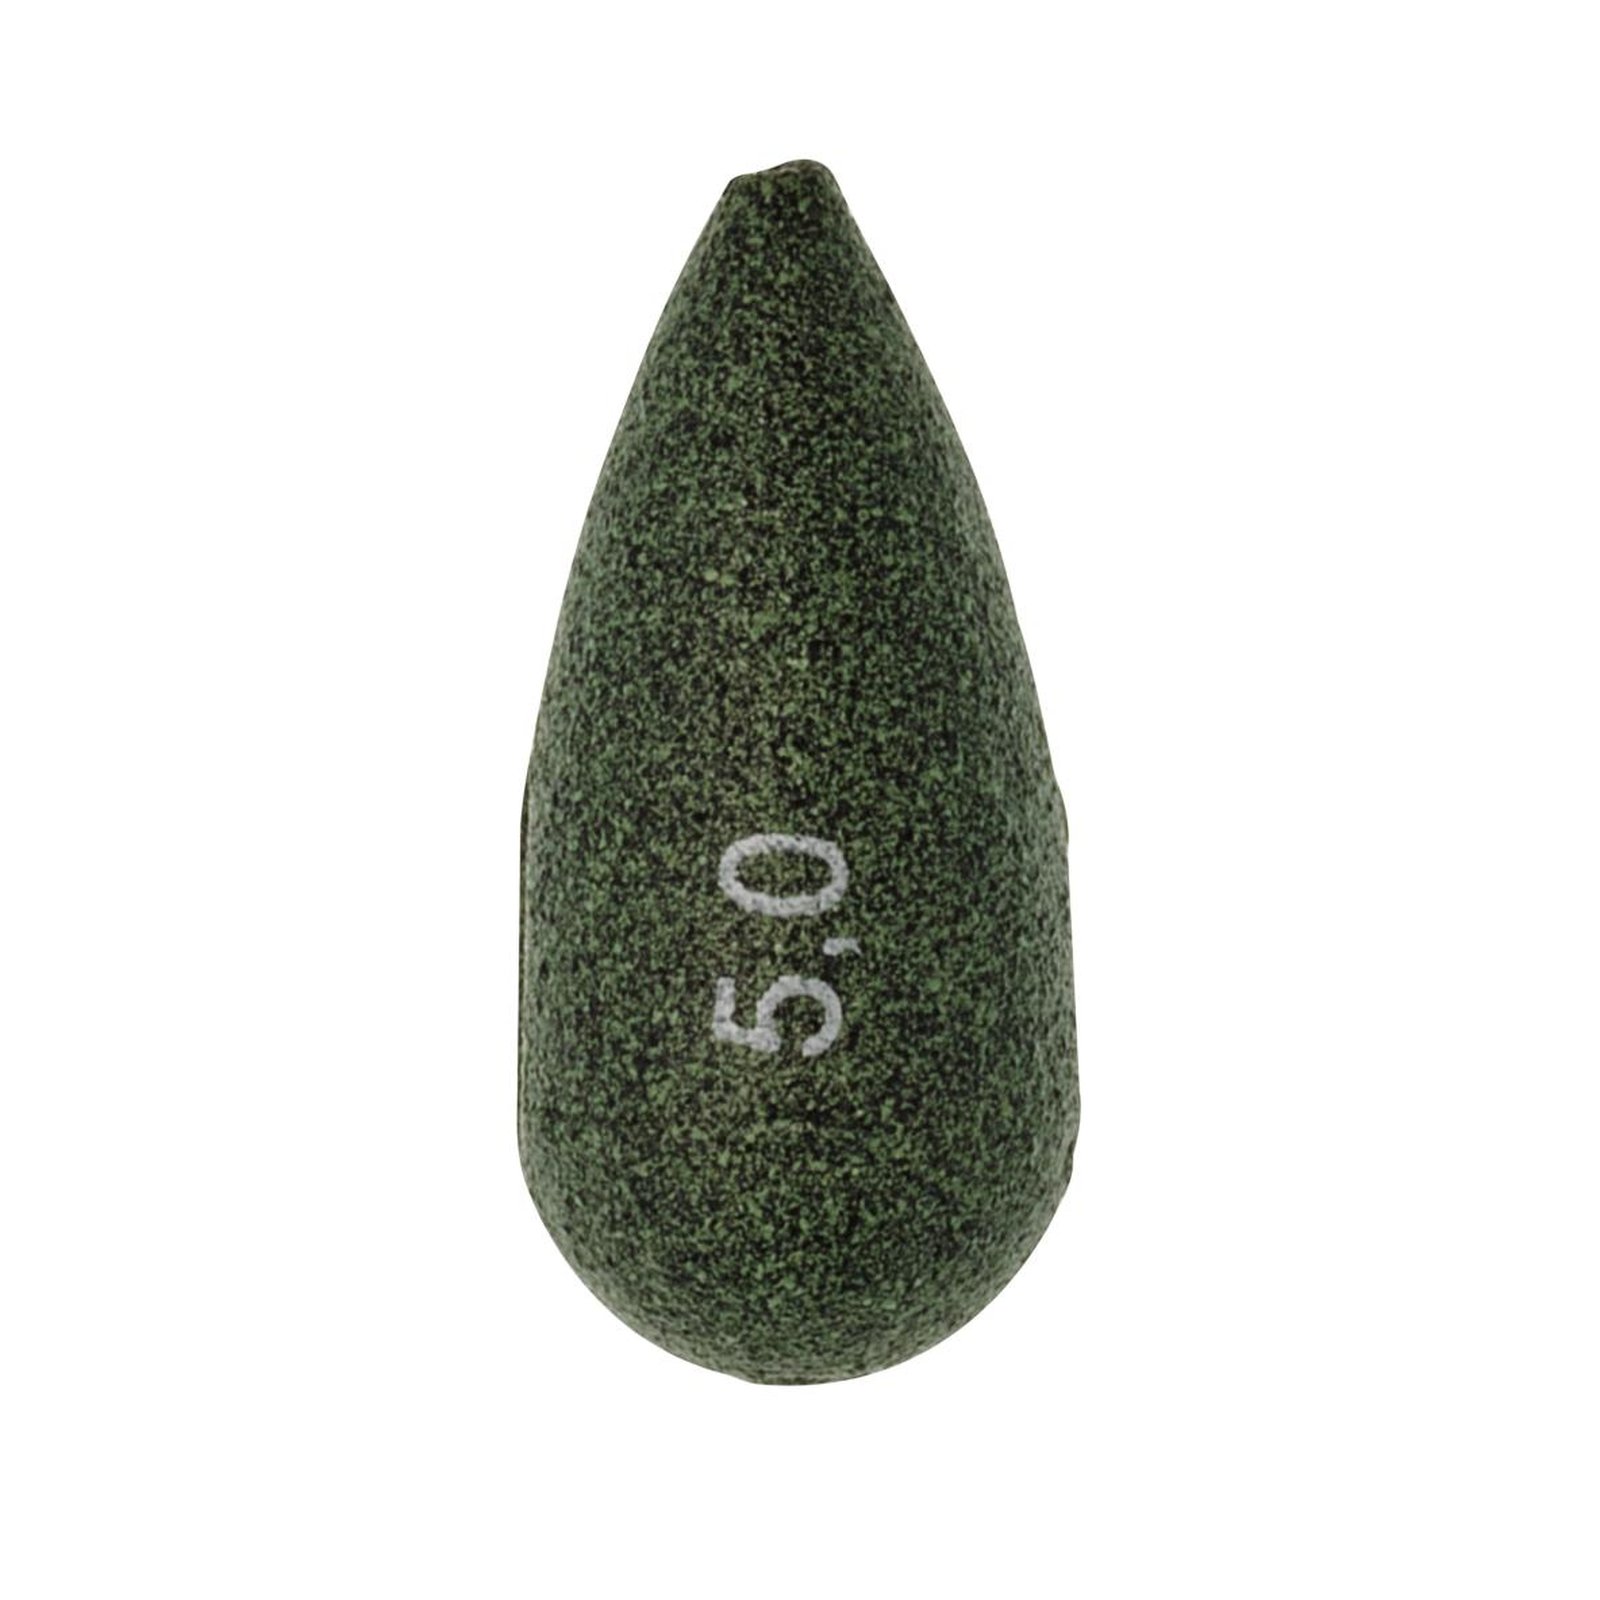 Sensas Oliven Birnenform grn 47878 / 8,0g